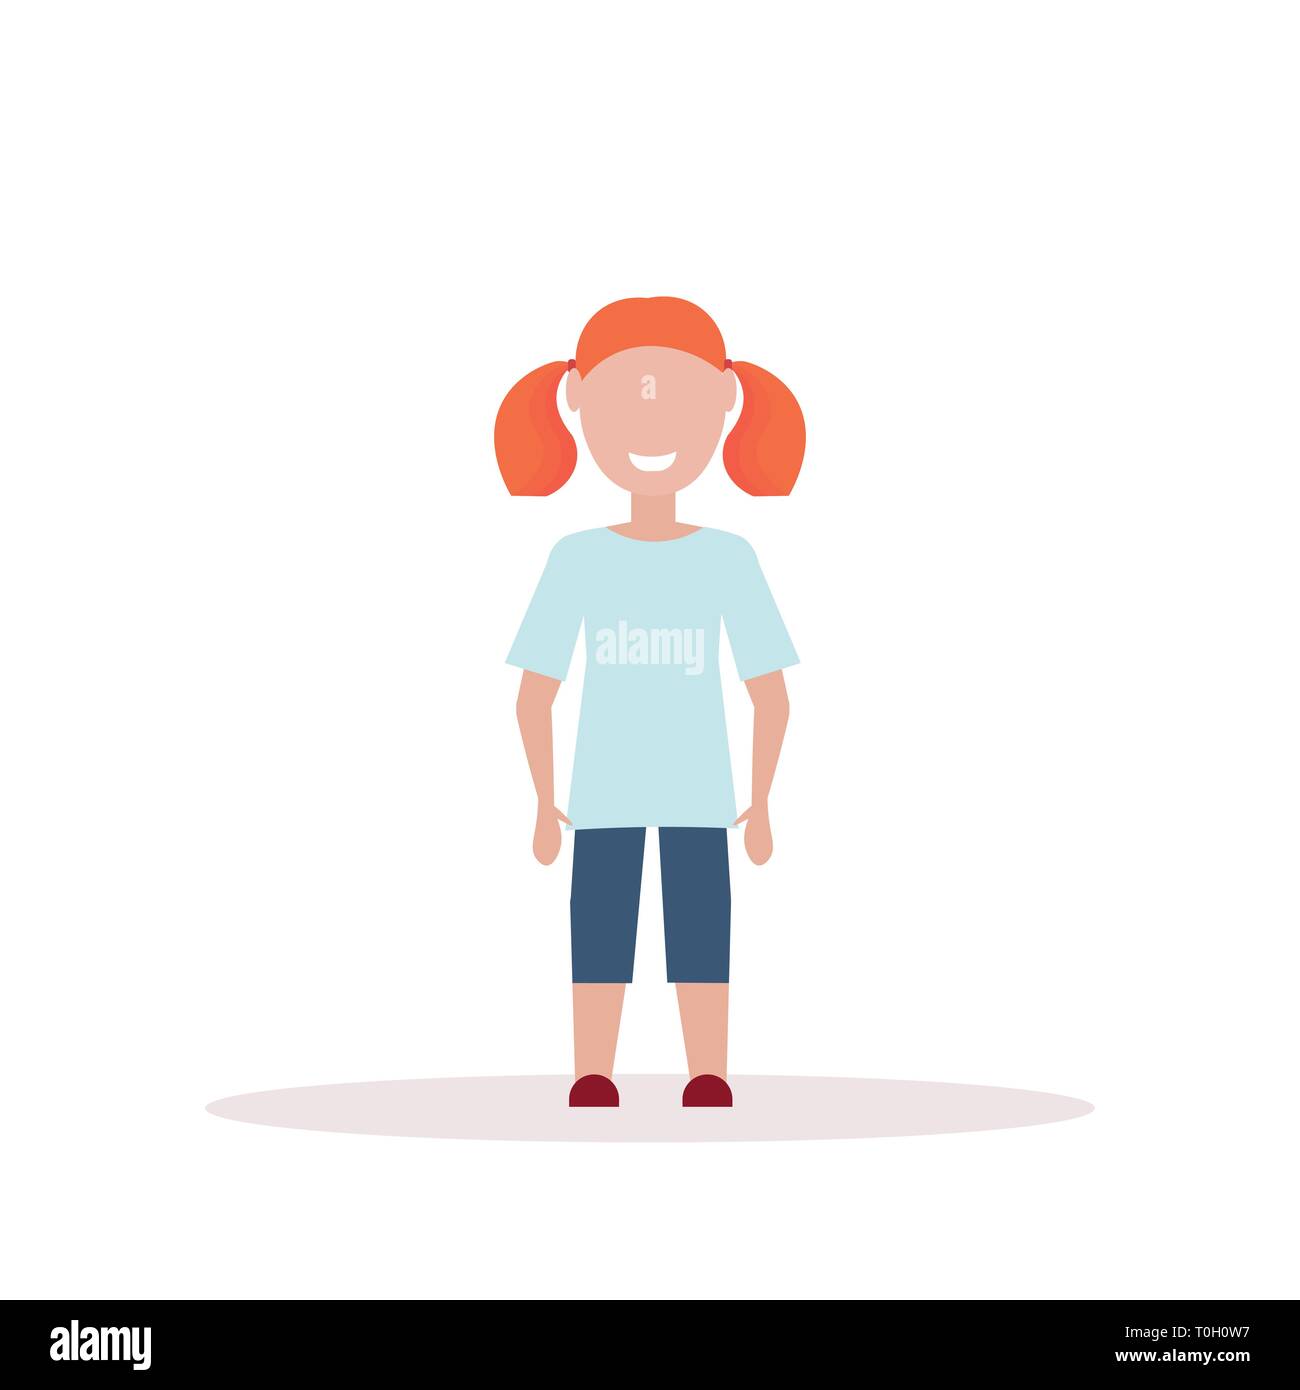 Heureux redhead girl présentent peu de personnage féminin enfant télévision pleine longueur fond blanc Illustration de Vecteur